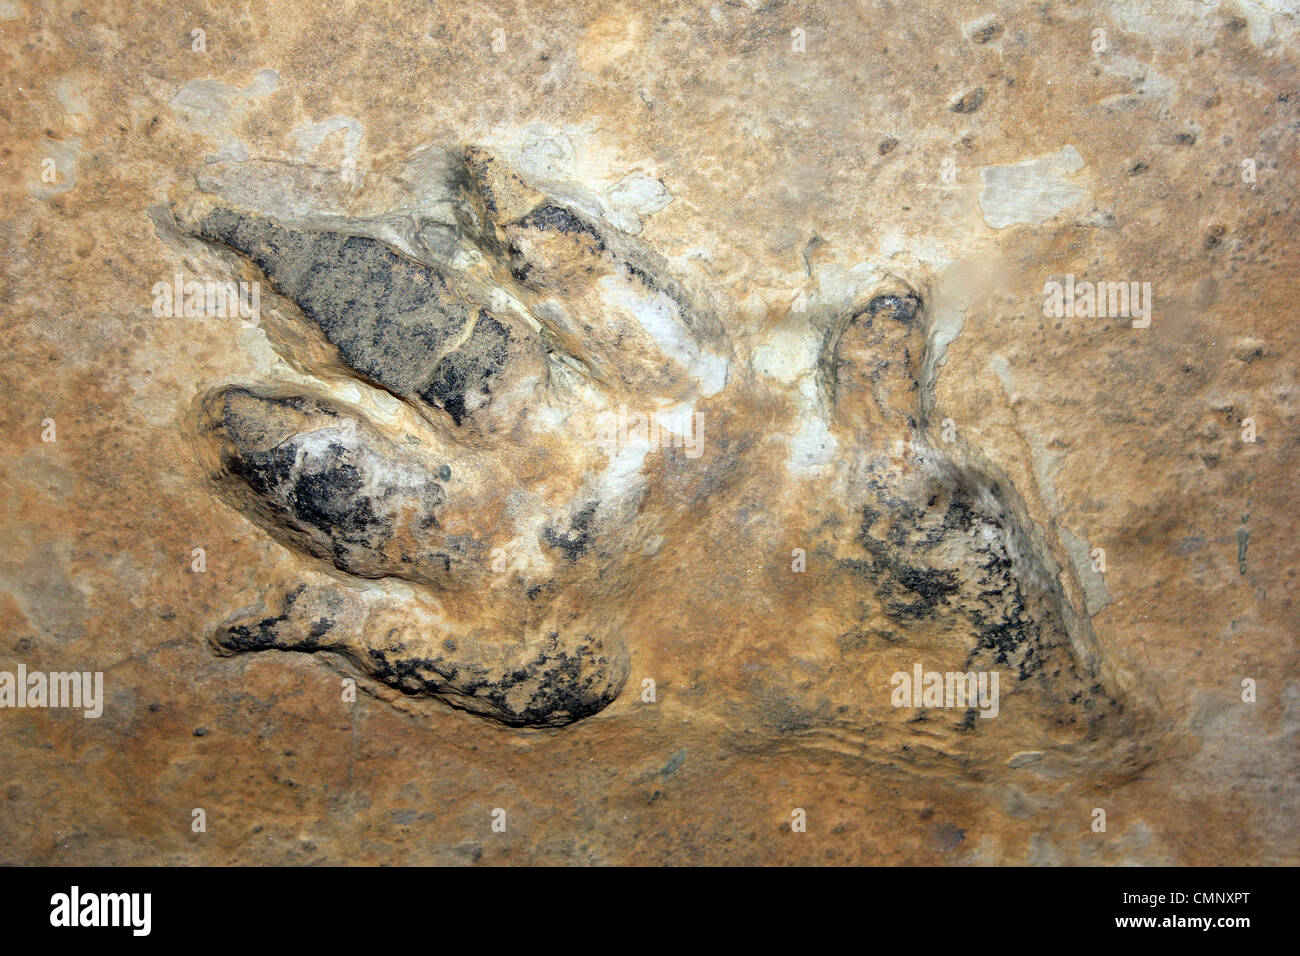 Chirotherium Footprint stortonense in arenaria Foto Stock